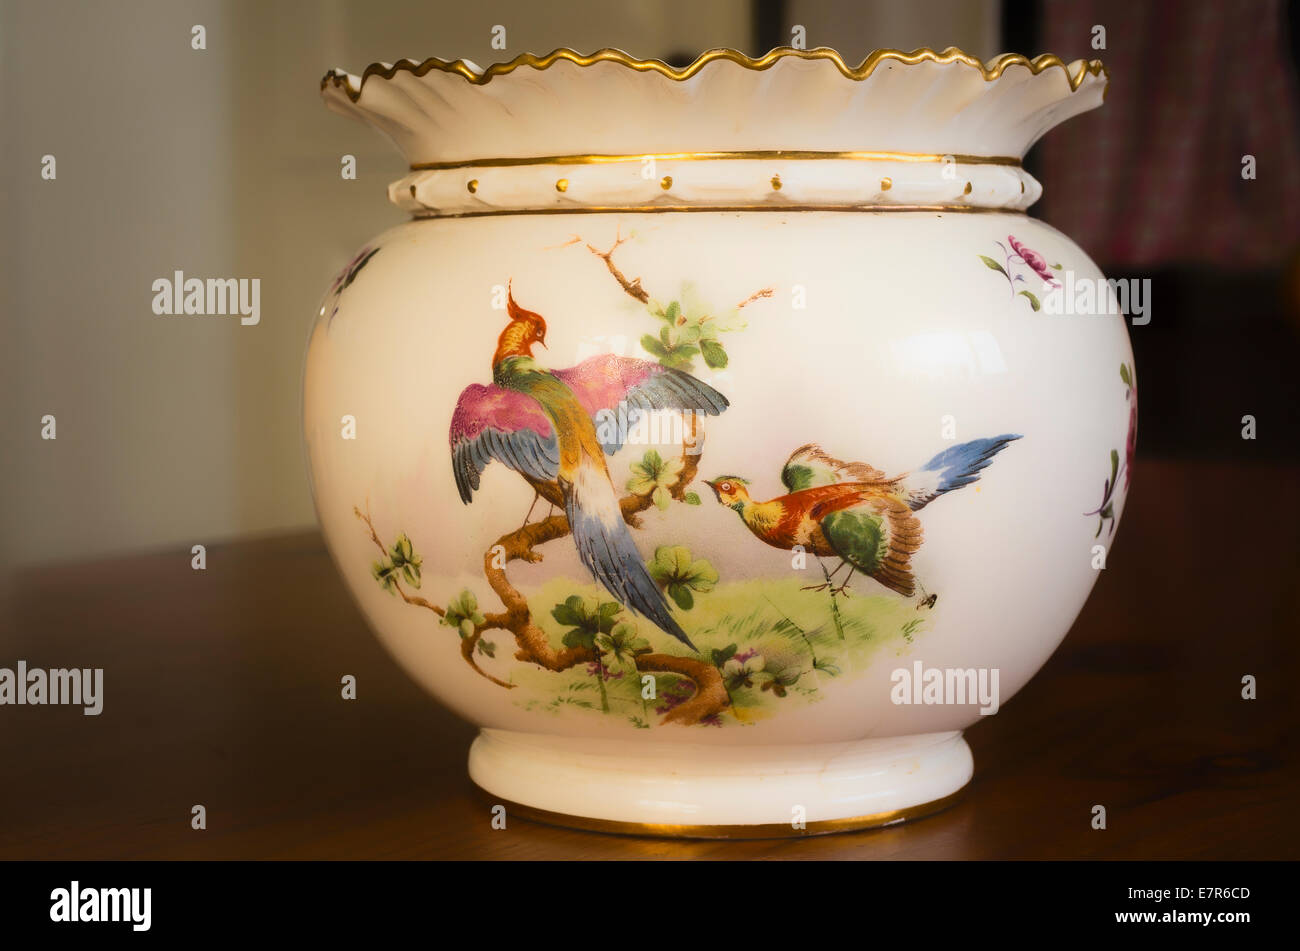 Décoration oiseaux exotiques sur le côté du vase d'ornement Banque D'Images